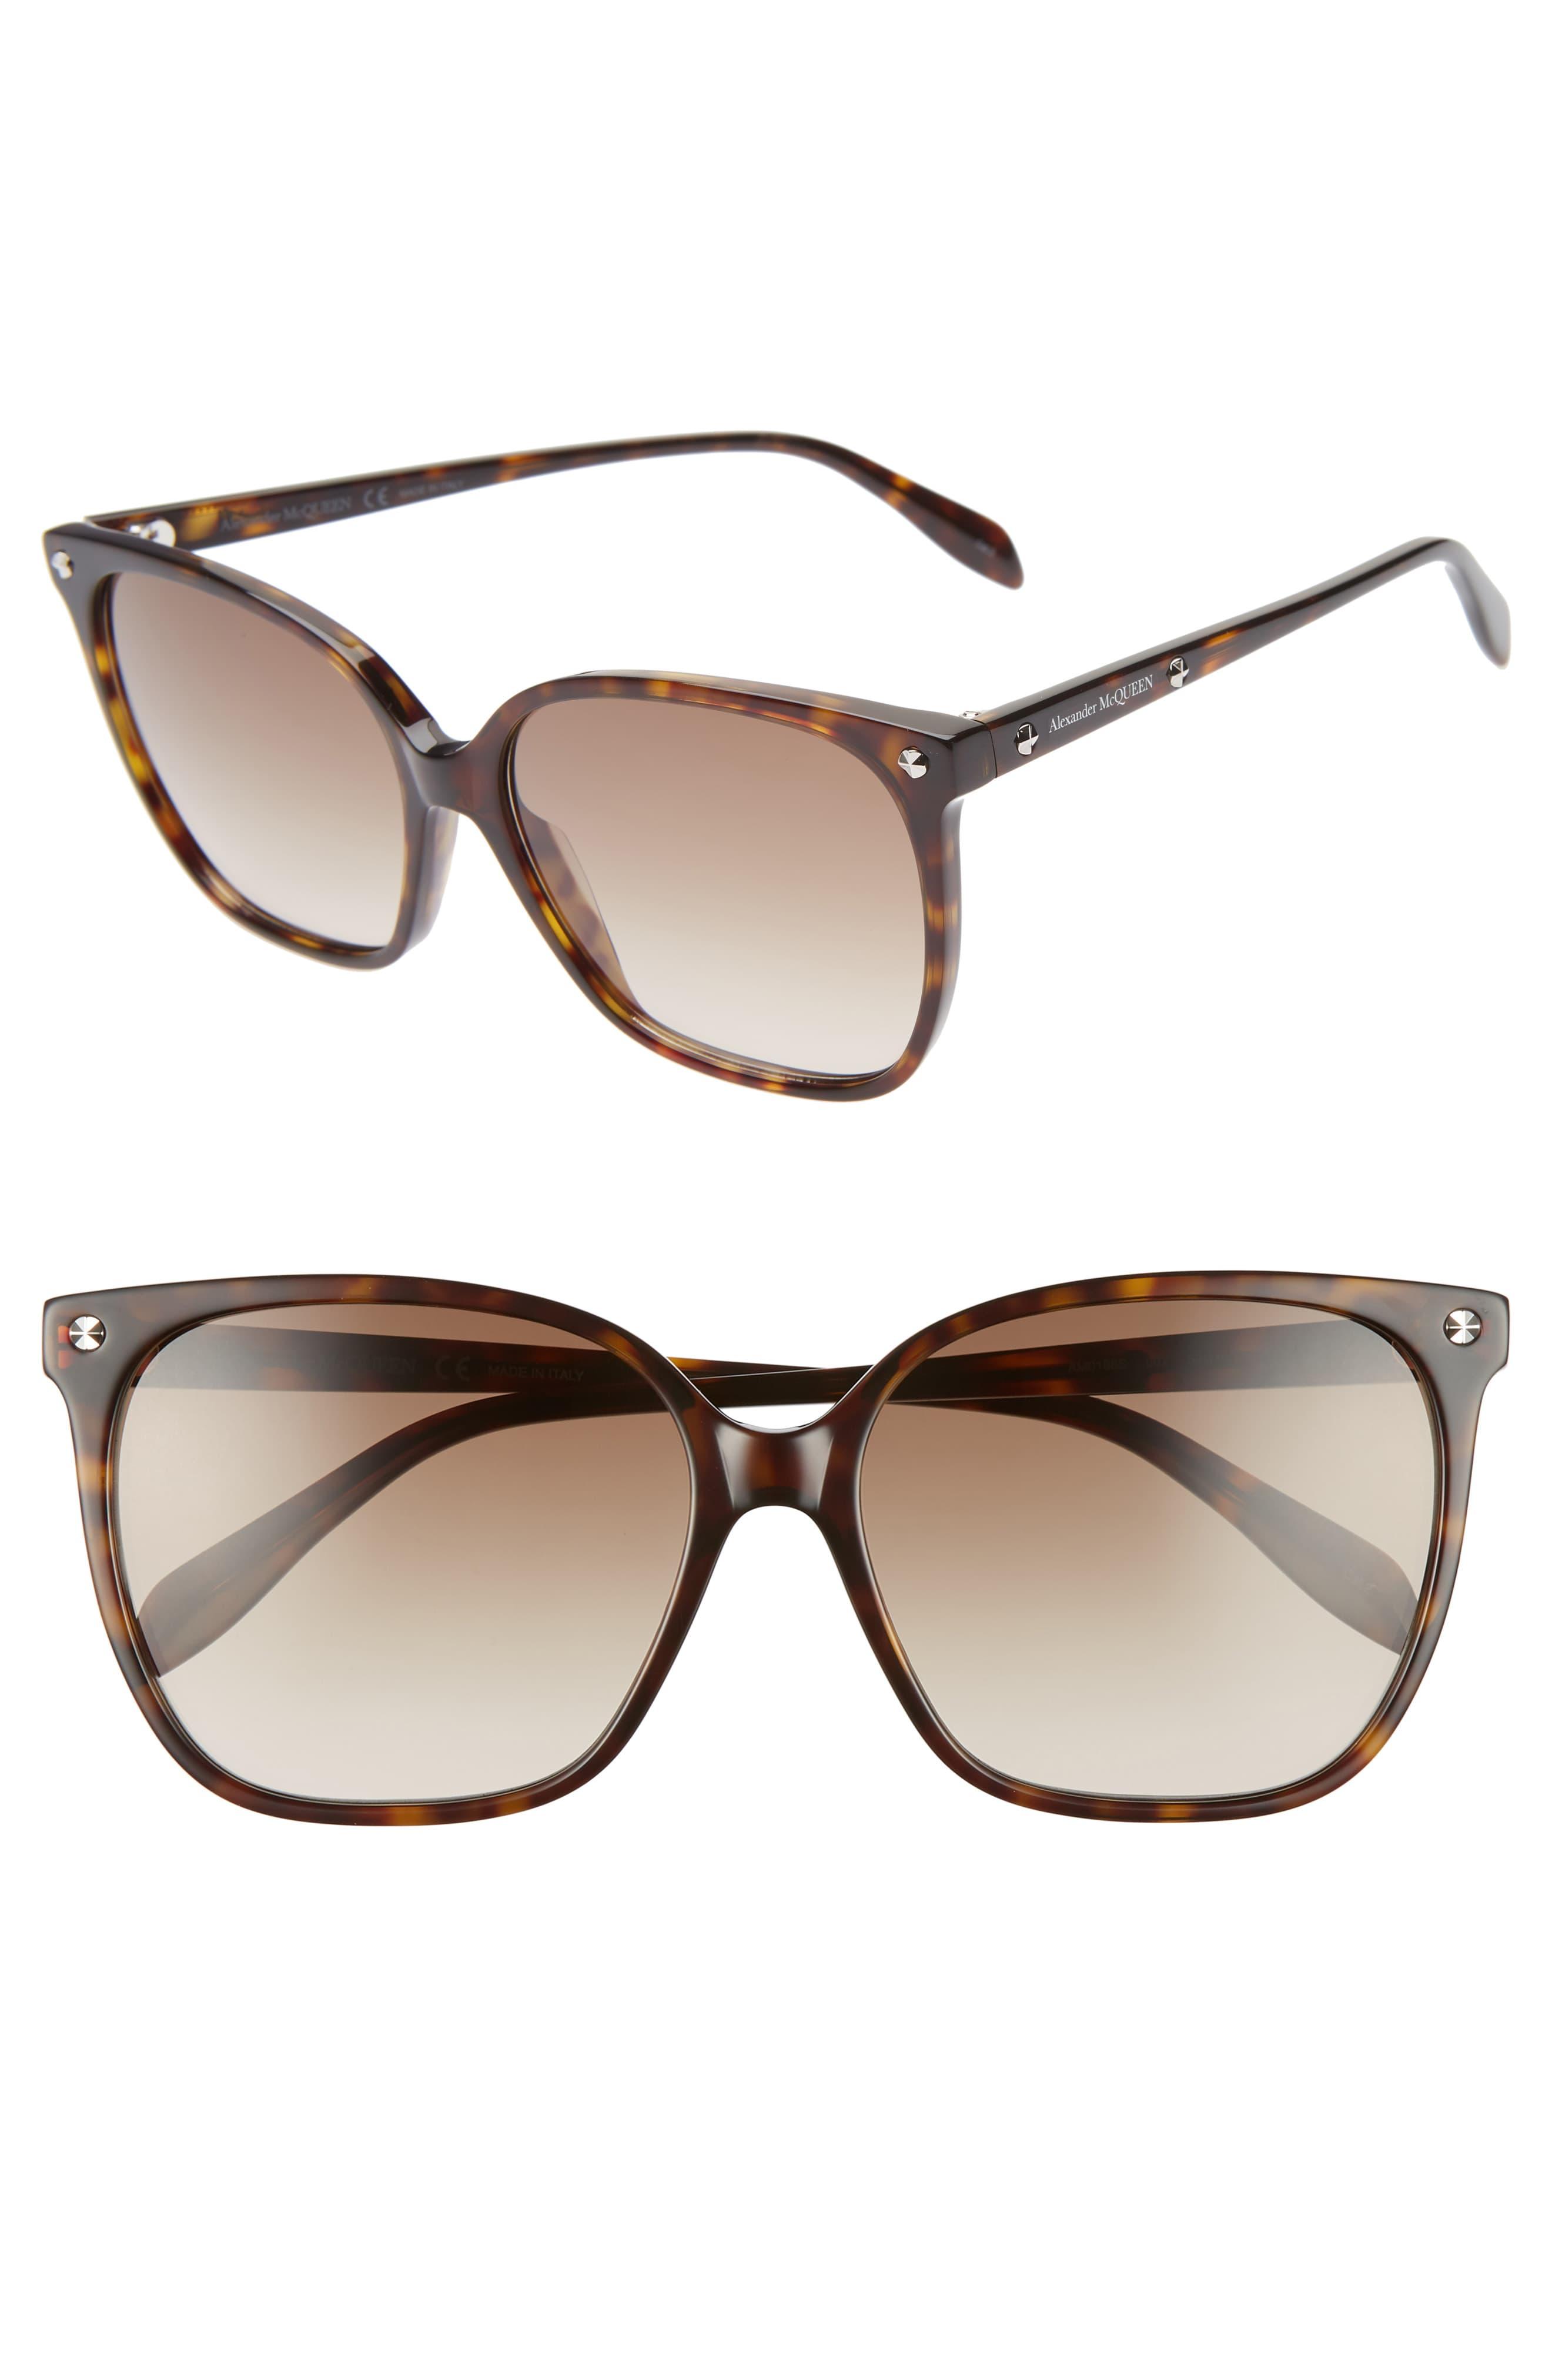 Alexander McQueen 59mm Butterfly Sunglasses - Dark Havana/ Grey in Gray ...